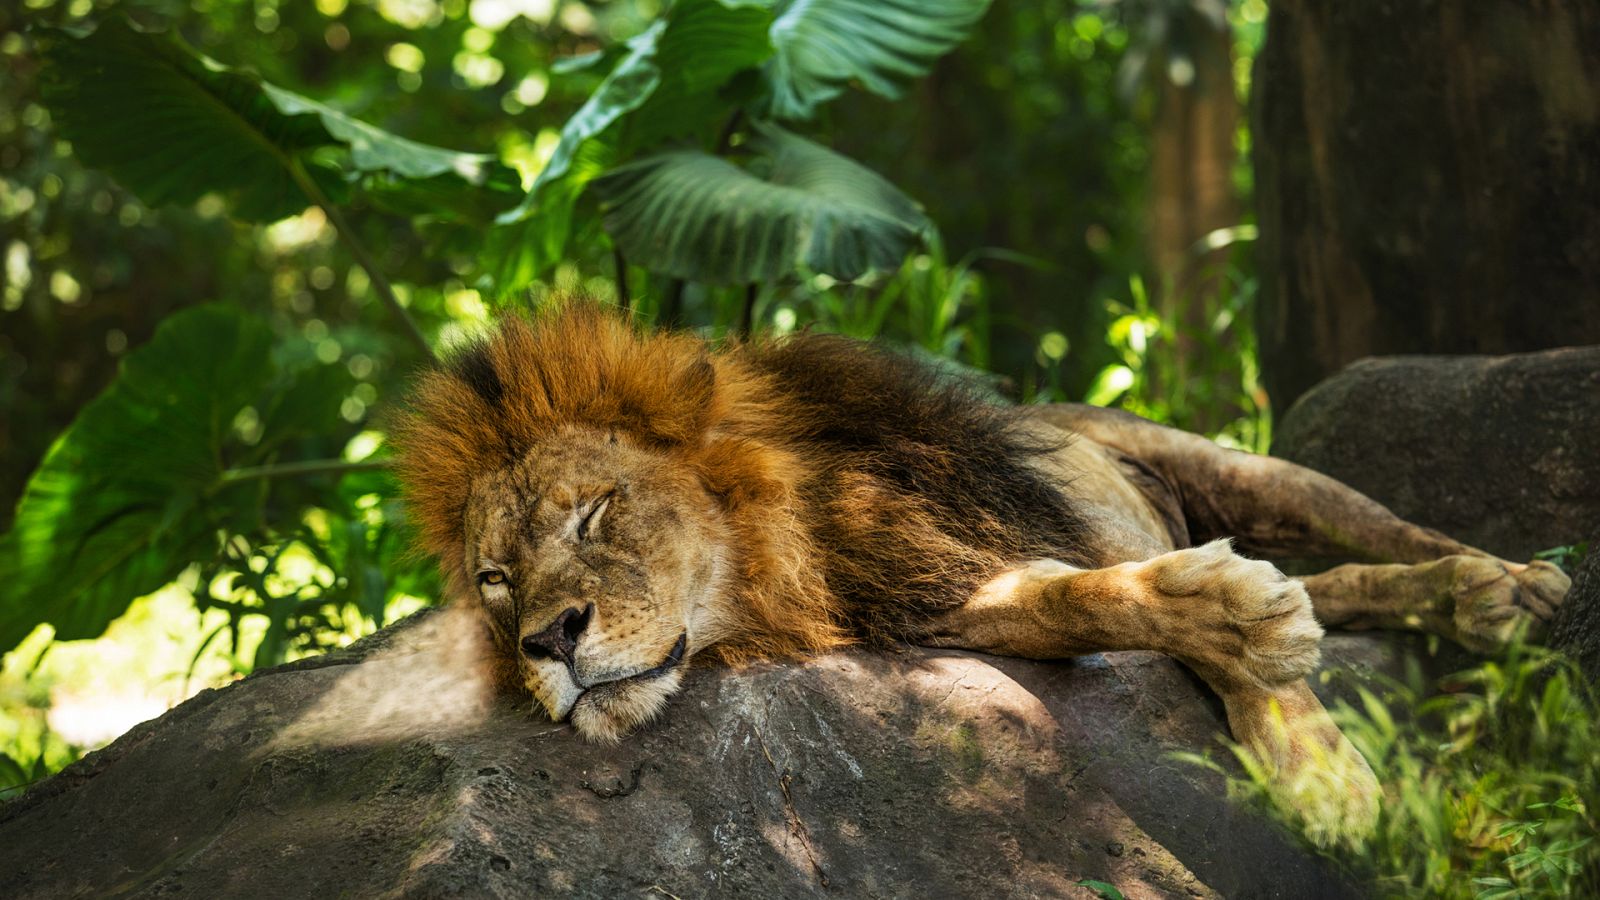 Grandes documentales - Animales a través de la noche: Durmiendo en el zoo - RTVE.es